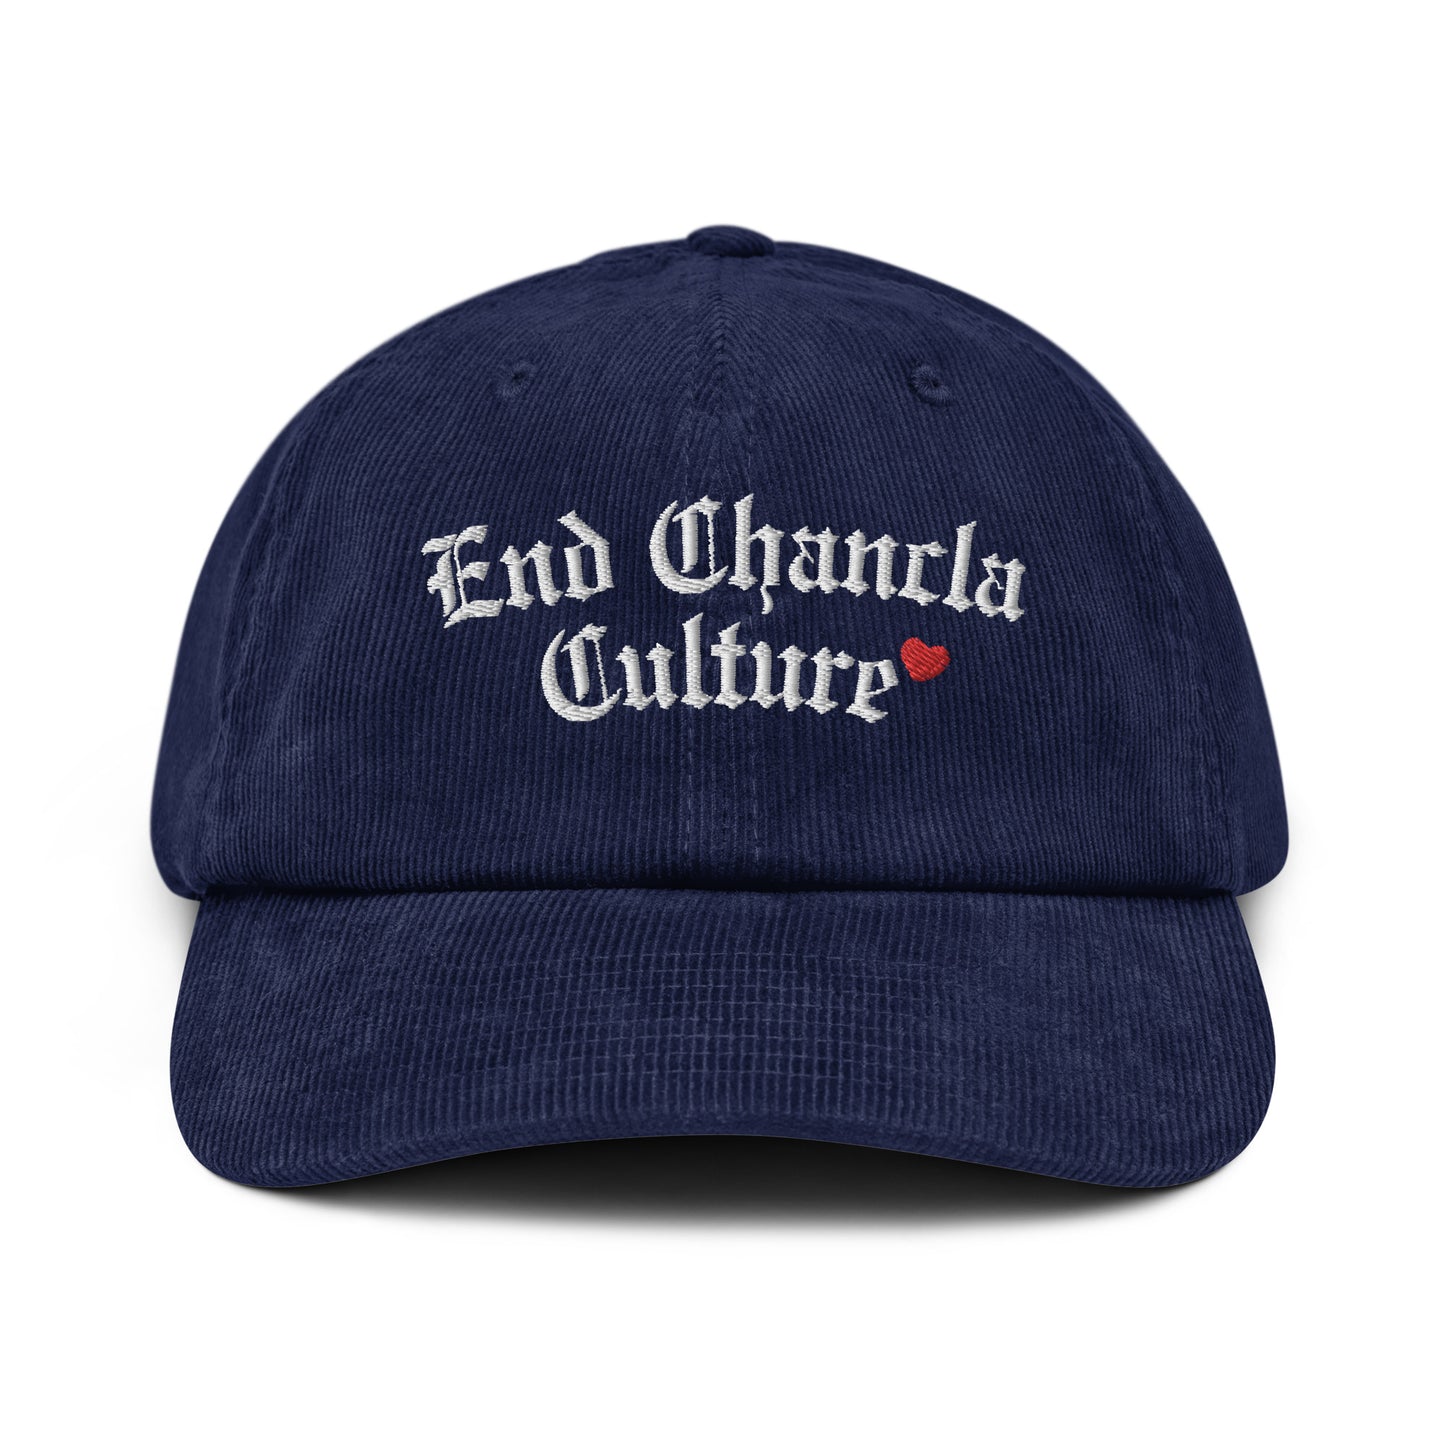 End Chancla Culture Corduroy hat